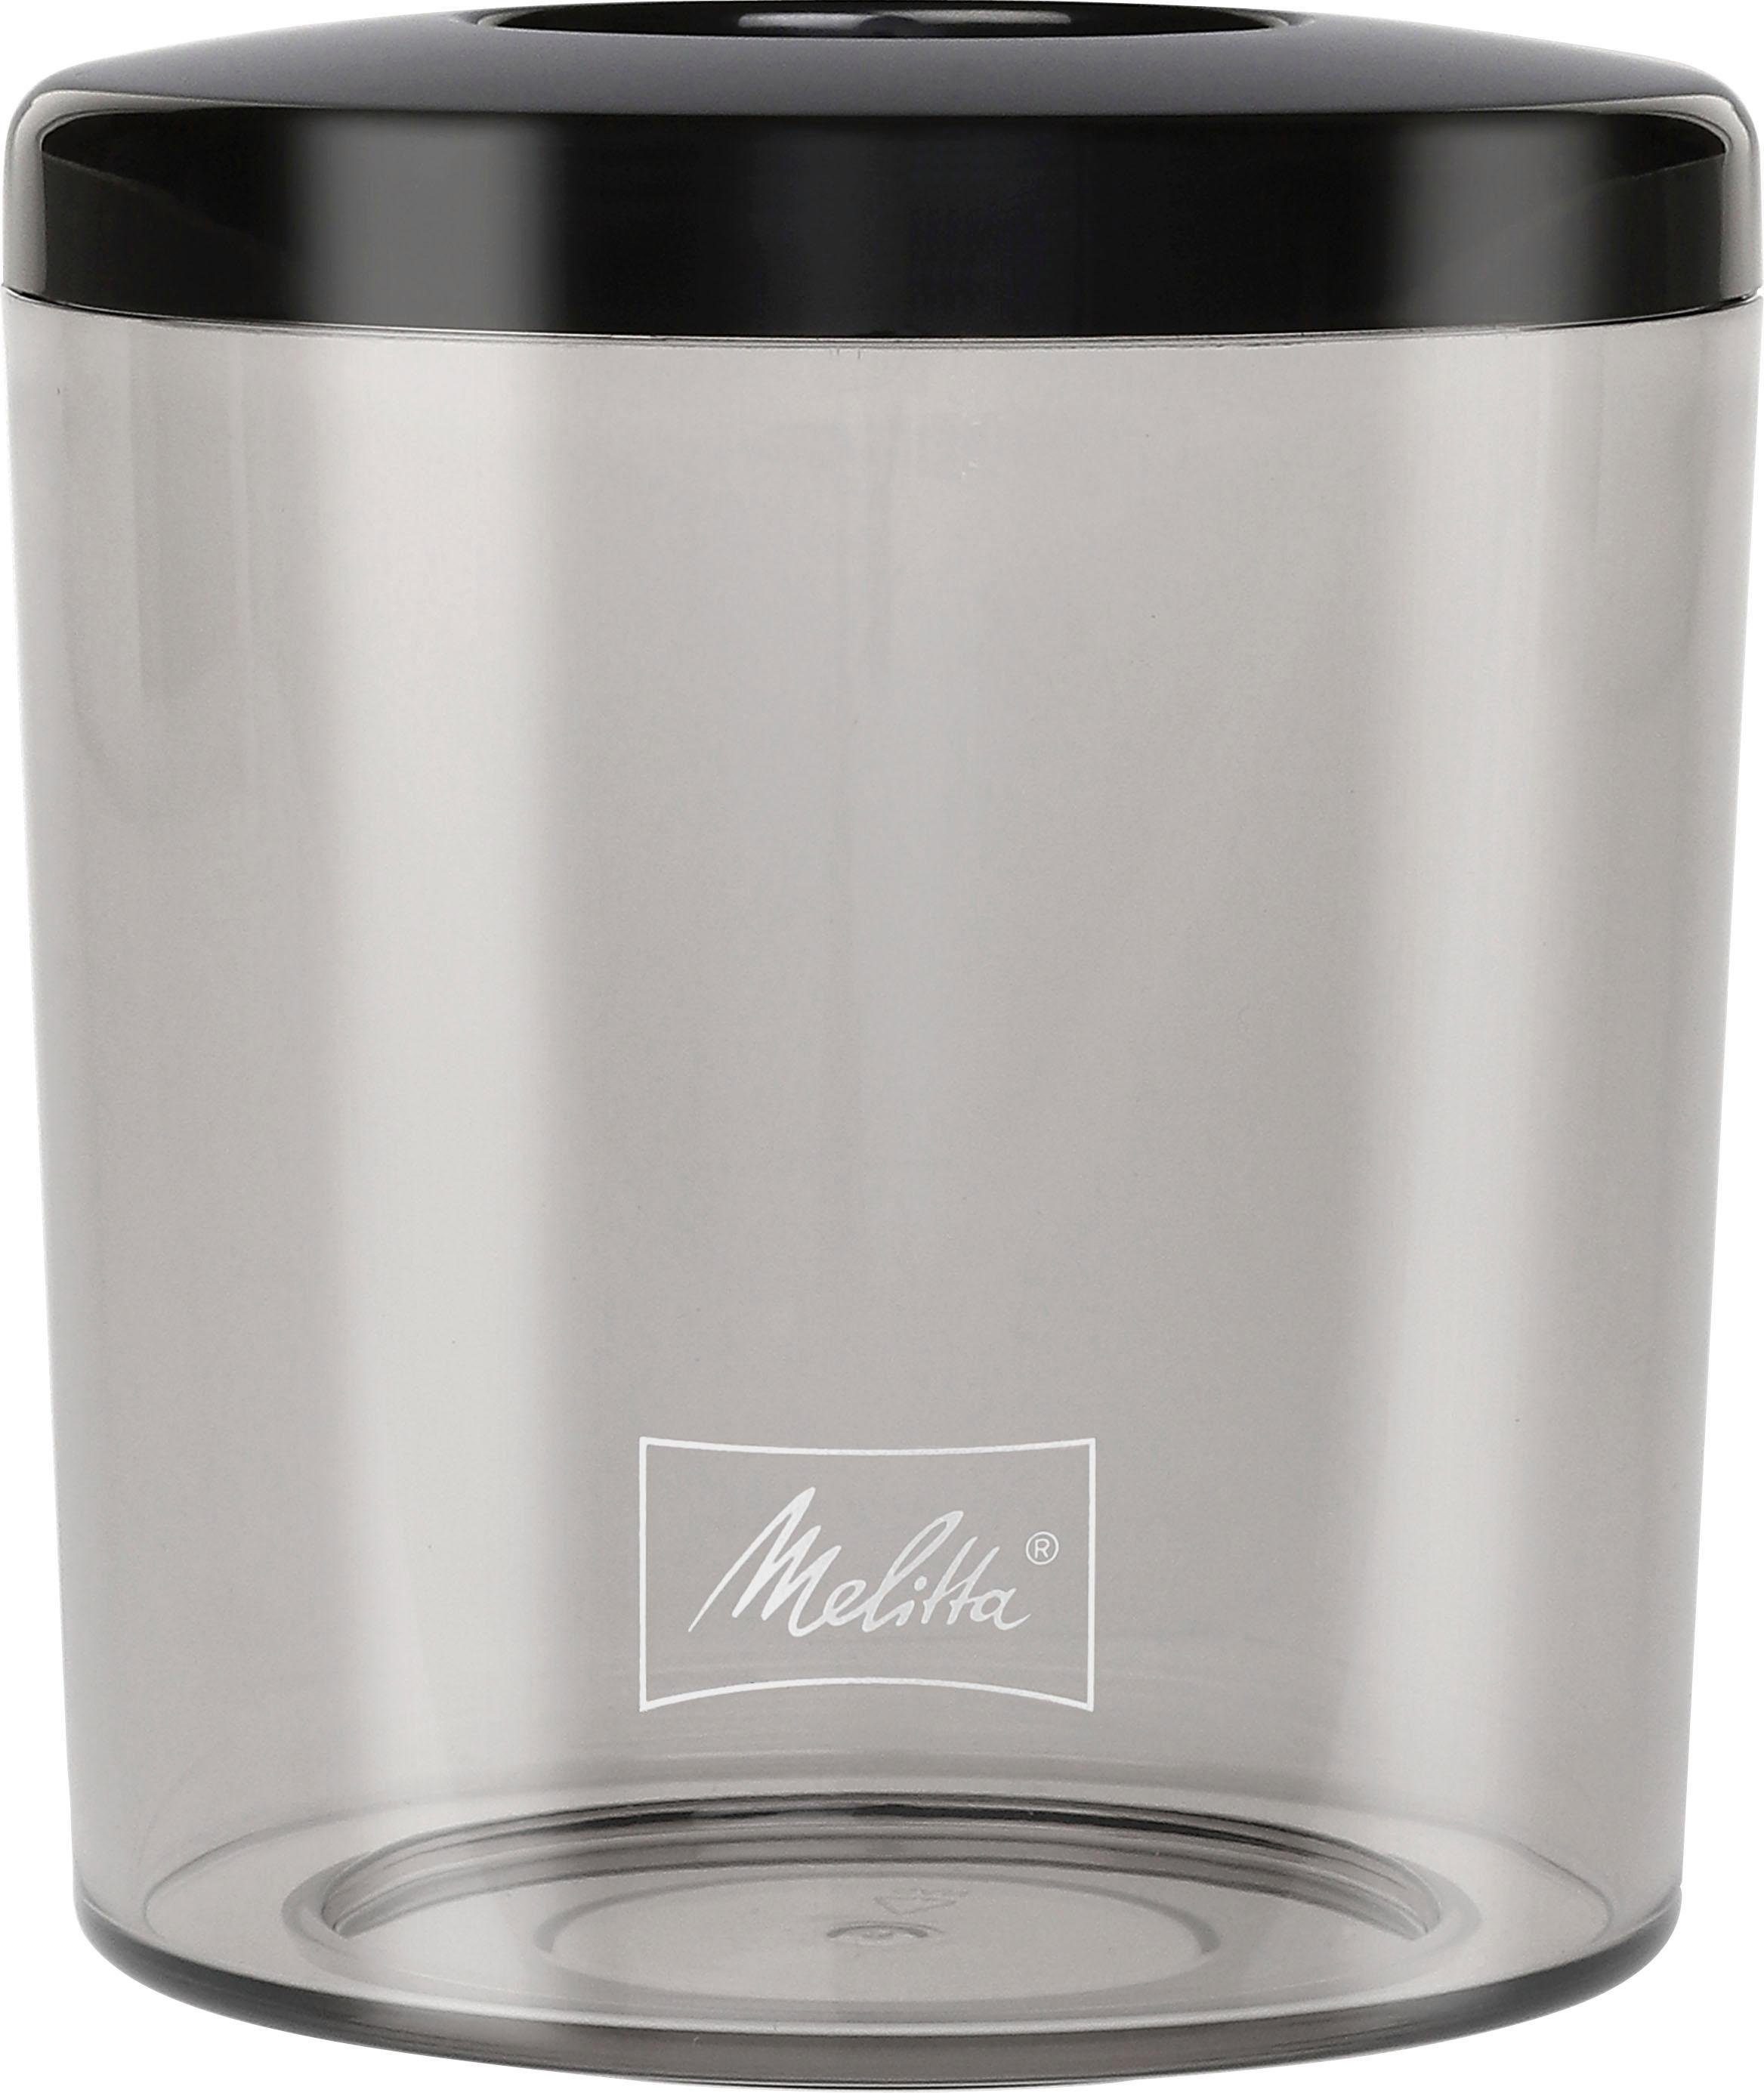 Melitta 375 1027-01 schwarz-Edelstahl, Kegelmahlwerk, Bohnenbehälter W, g Calibra Kaffeemühle 160